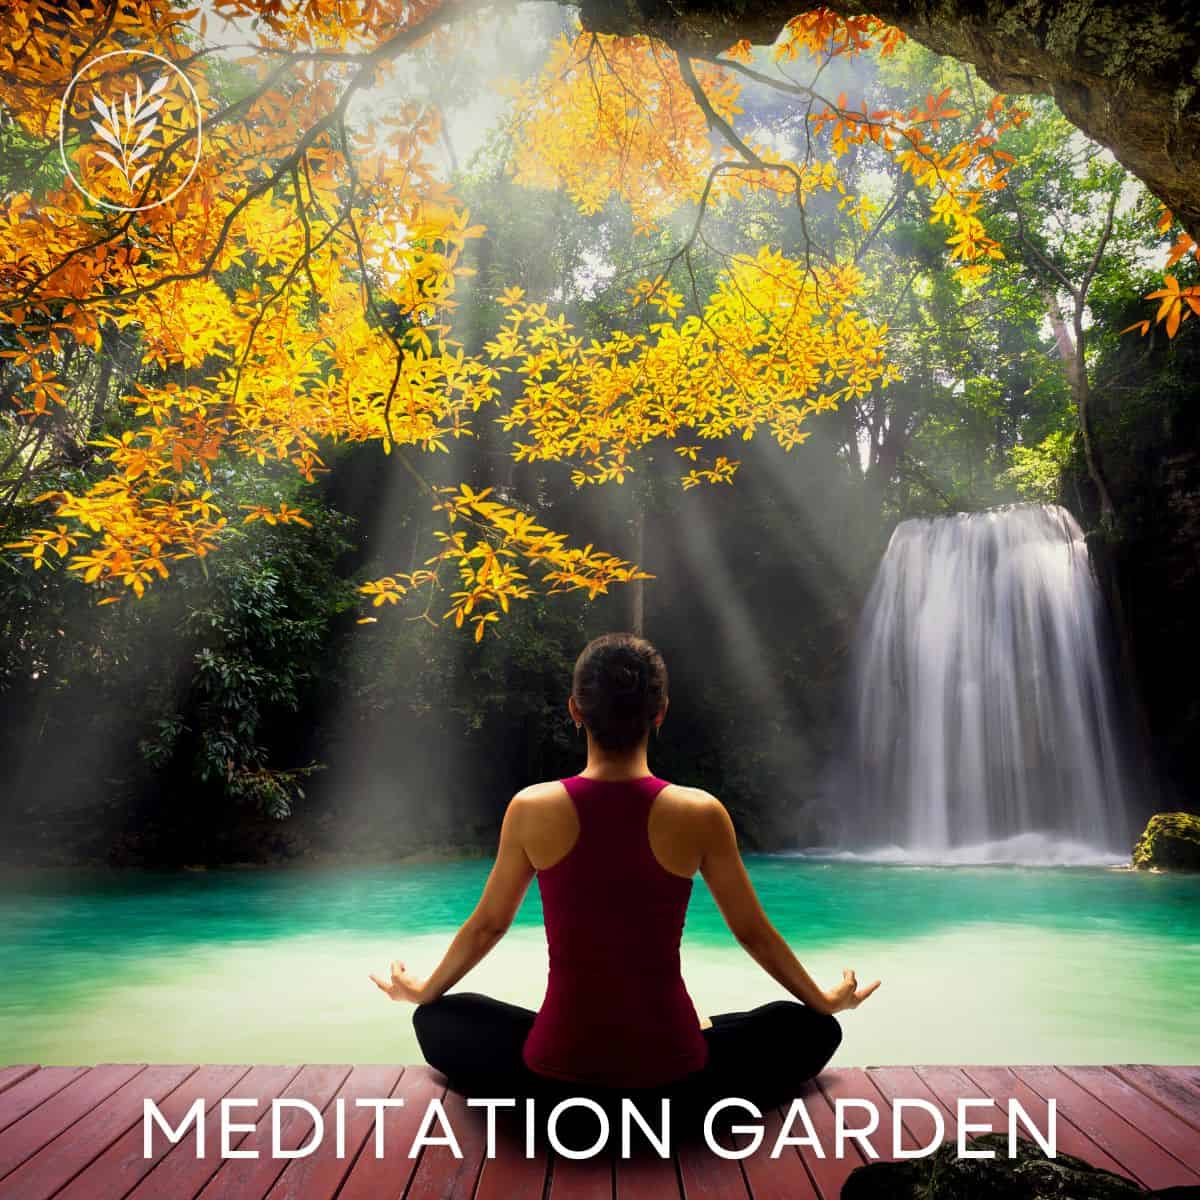 Meditation garden via @home4theharvest